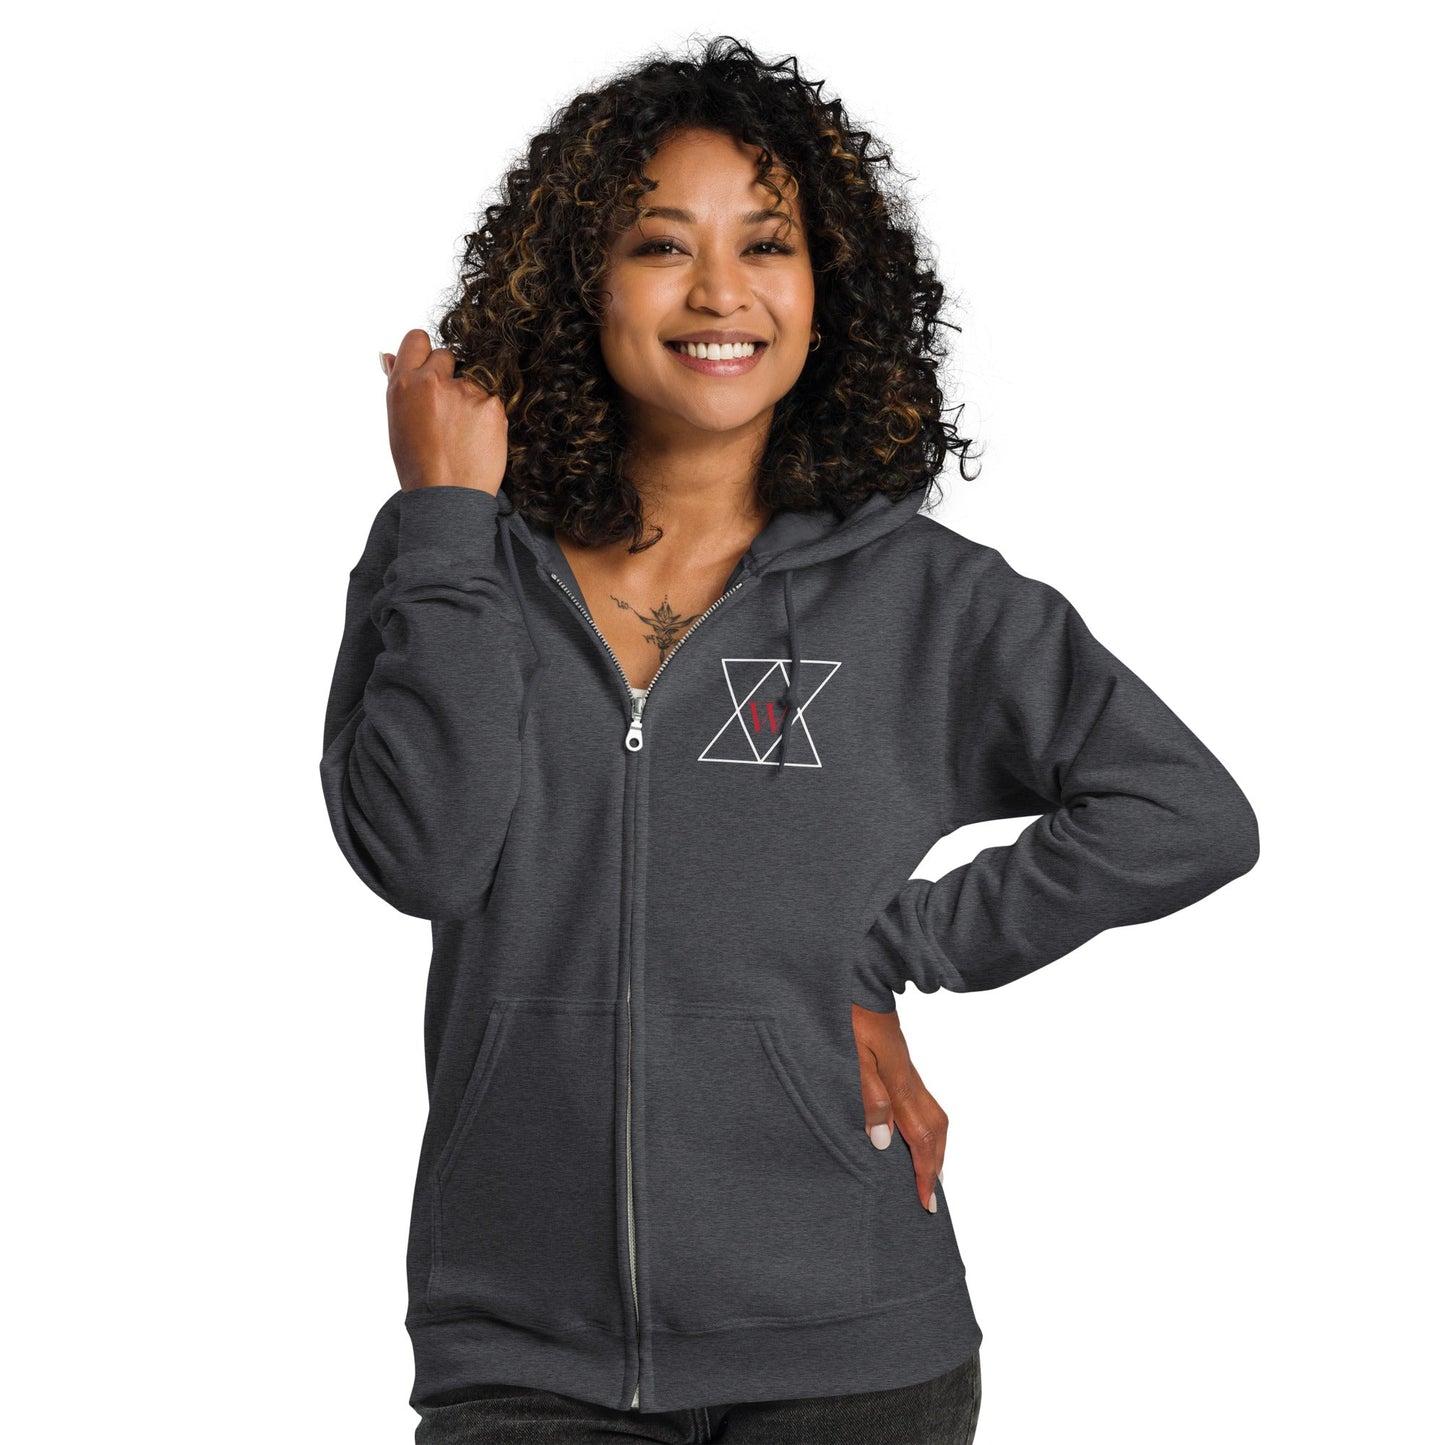 Unisex heavy blend zip hoodie - Wifler Industries--Wifler Industries-1350365_17347--S---Unisex heavy blend zip hoodie-